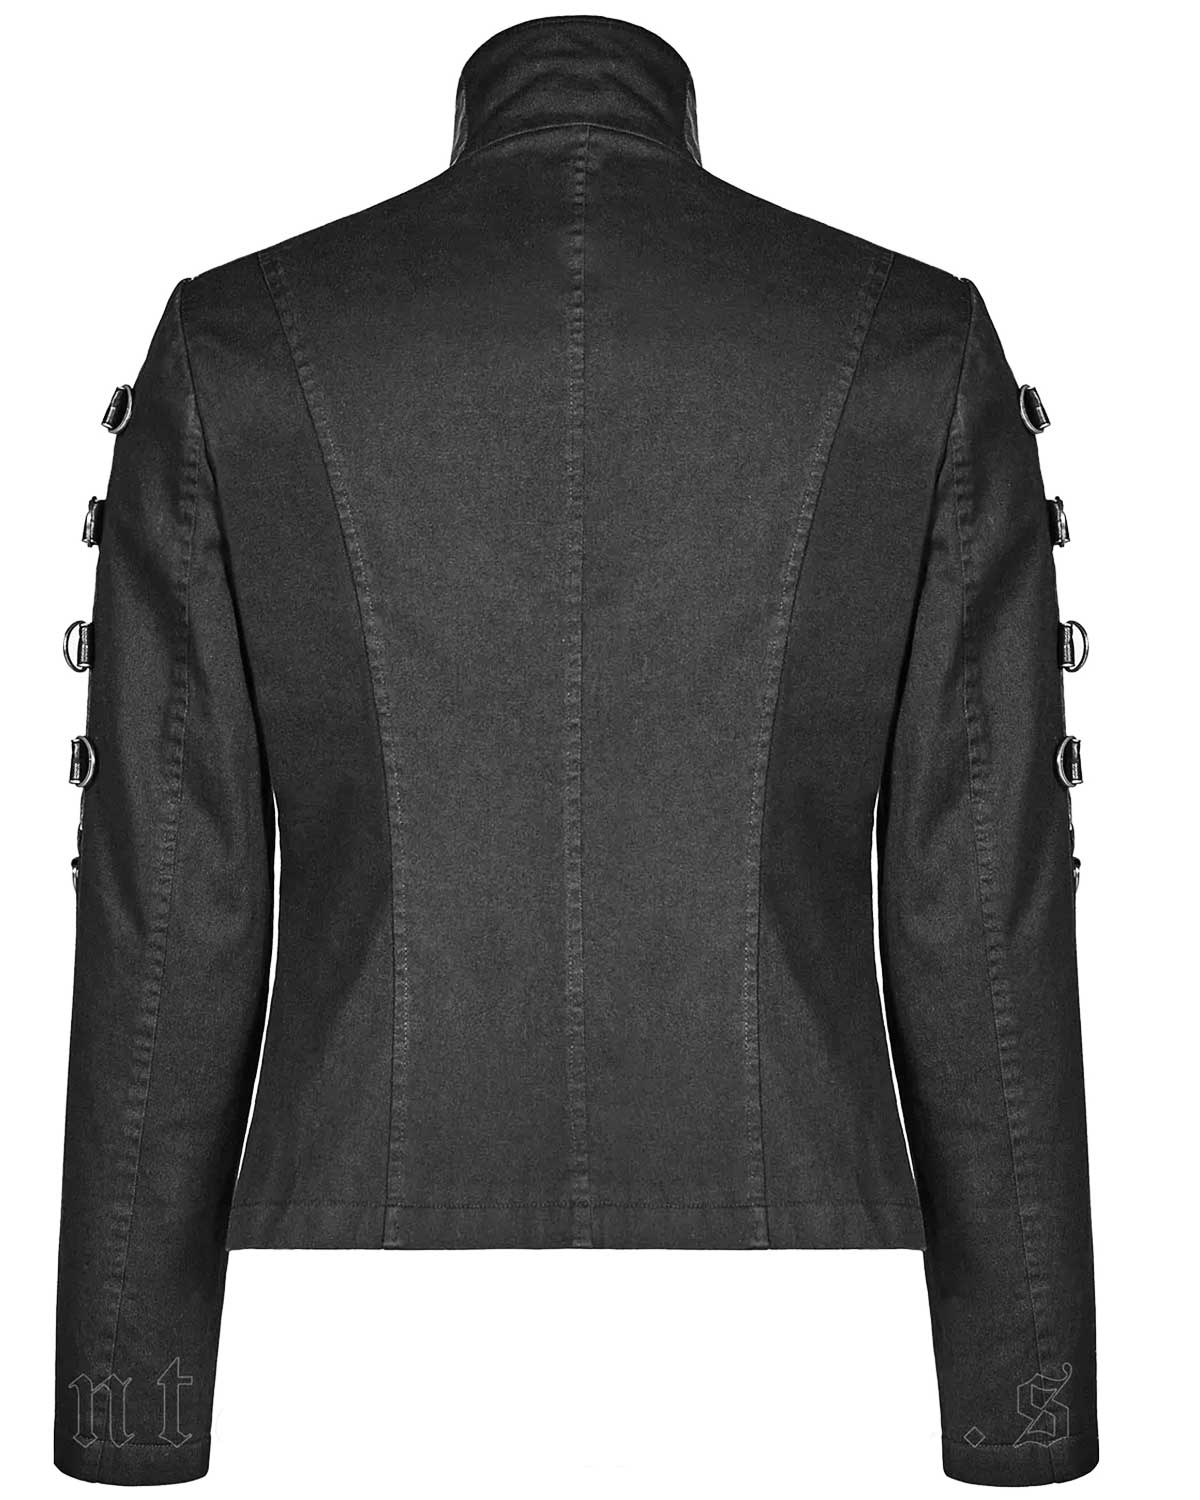 Asylum Gothic Punk Rave Black Leather Jacket | Elite Jacket